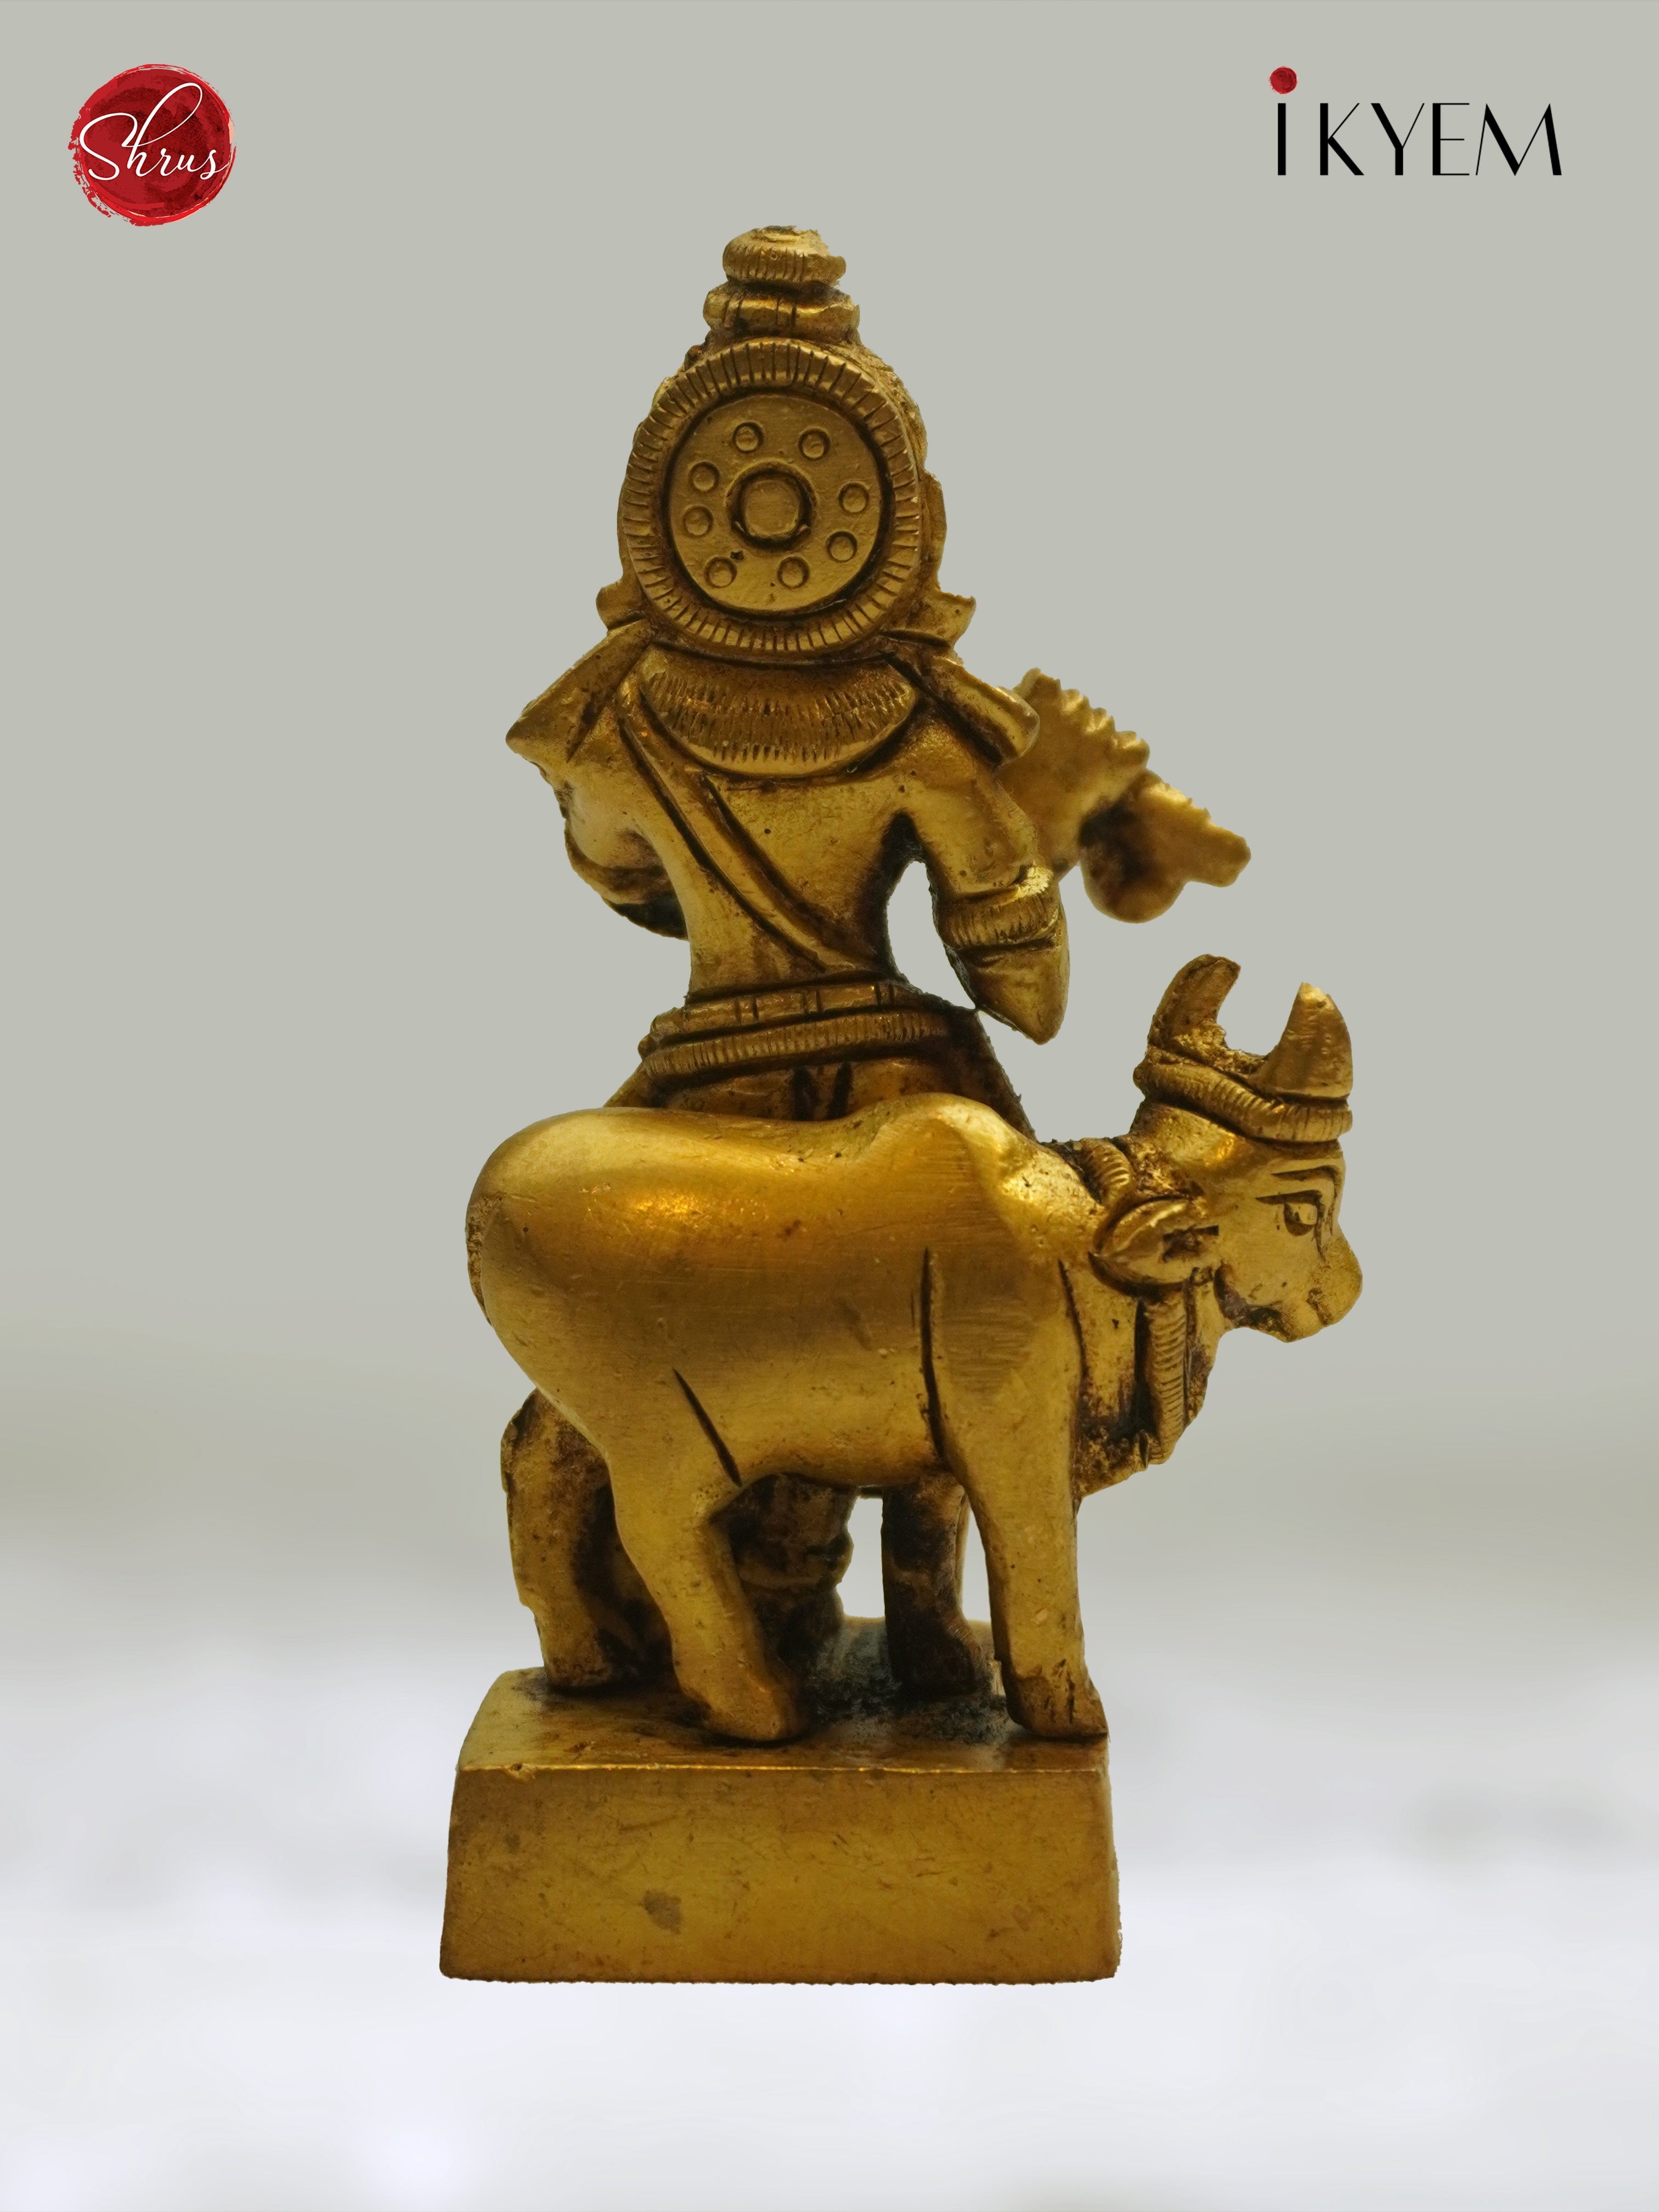 Lord krishna - Idol